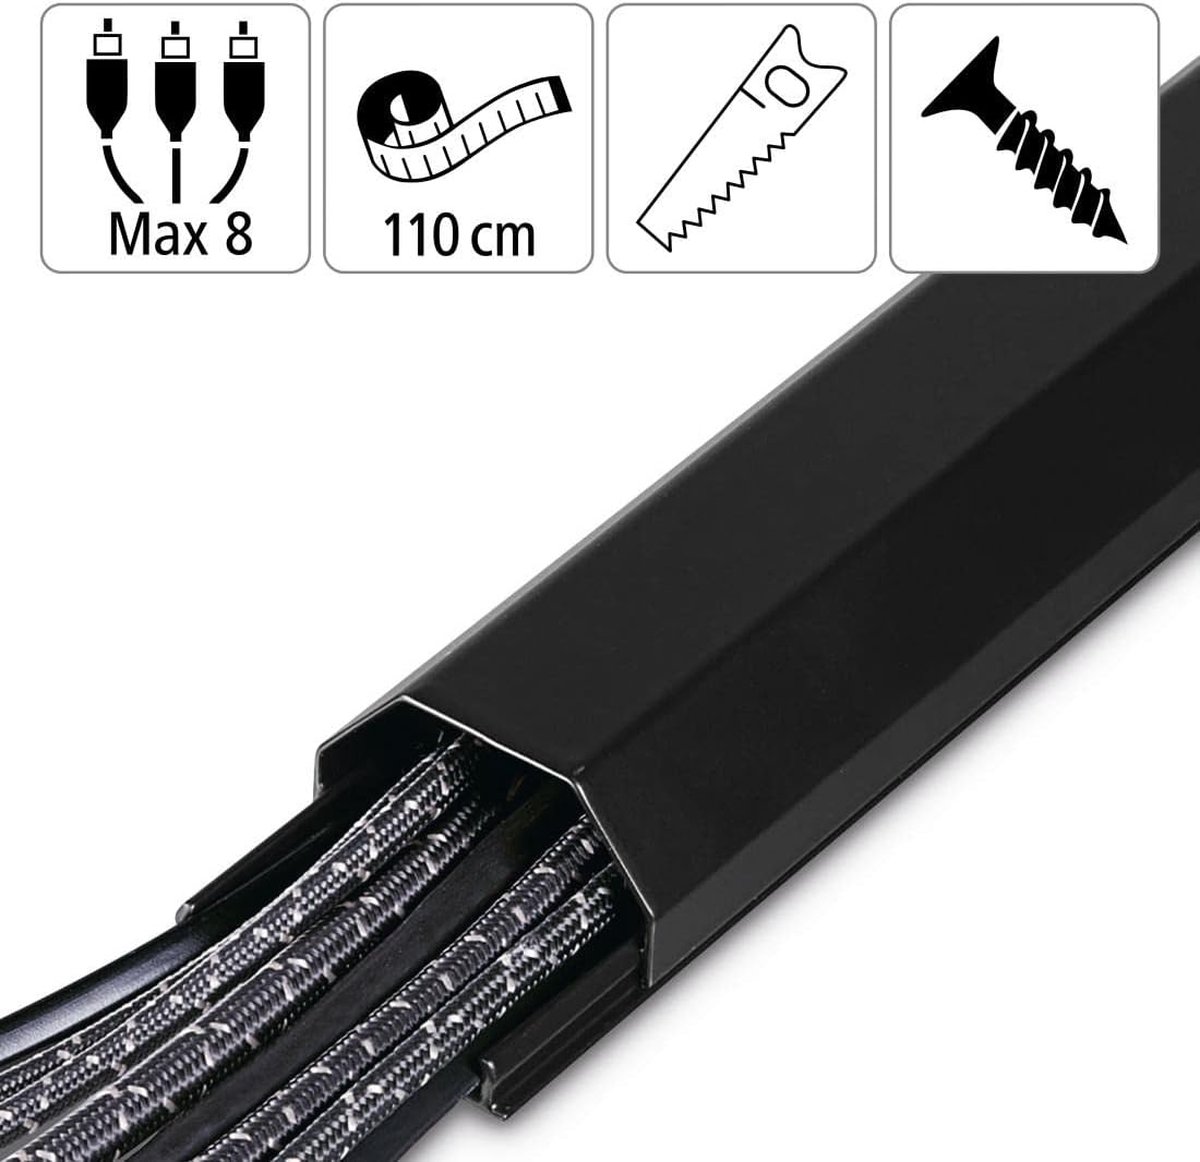 Stabiele kabelgoot van aluminium zwart (1,1 meter lengte, voor 8 kabels, robuuste vierkante metalen kabelafdekking, incl. schroeven en pluggen)